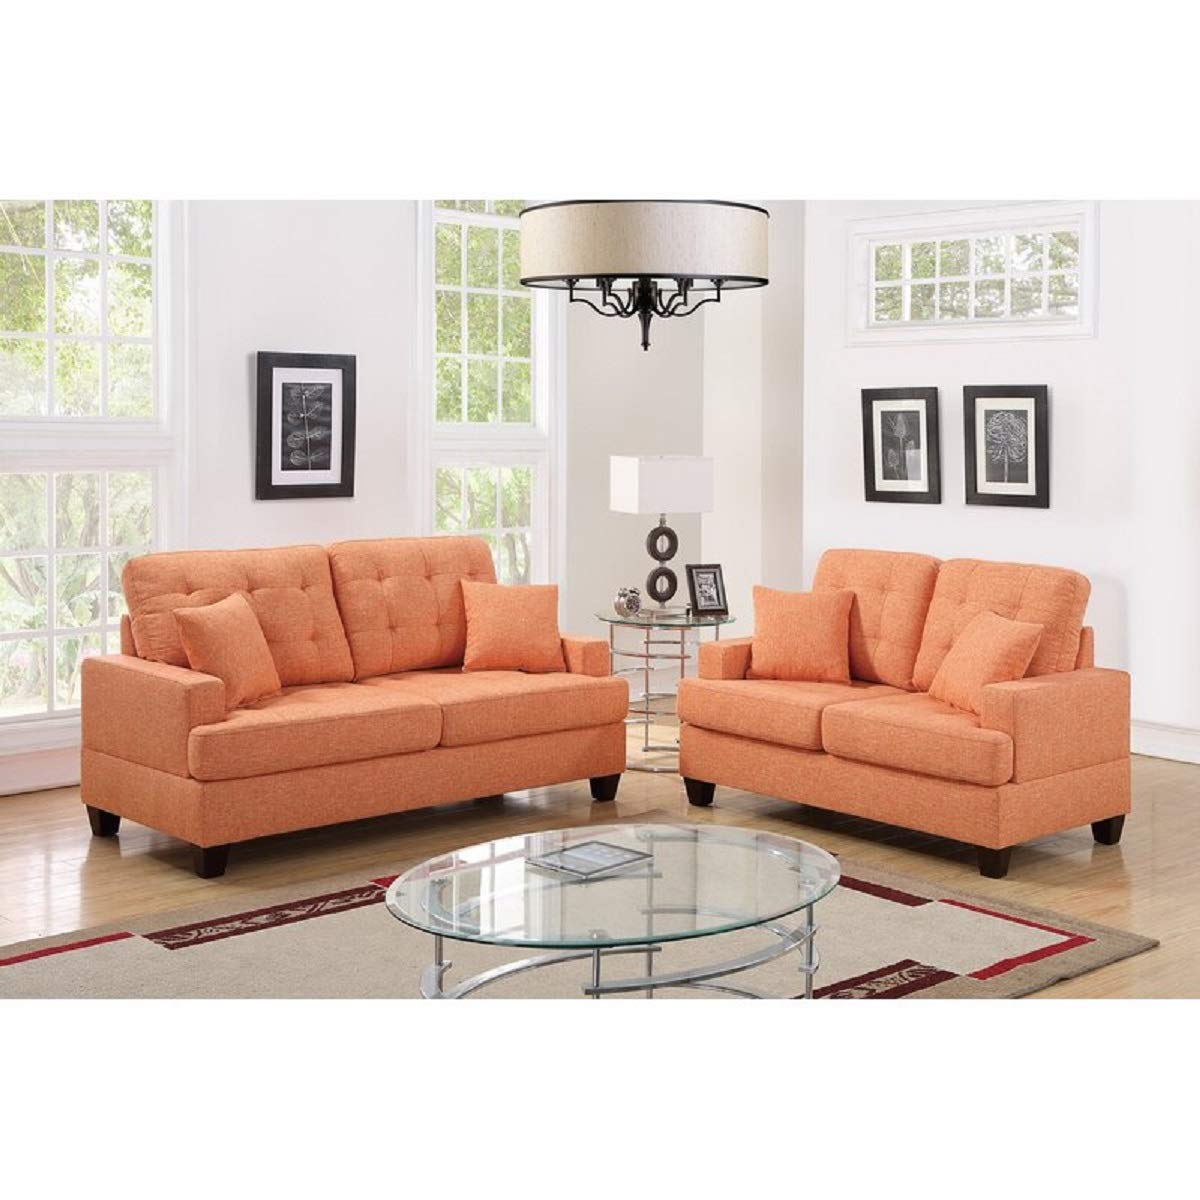 Designer Sofa Set:- AMIA 3+2 Fabric Luxury Furniture Sofa Set (Orange)